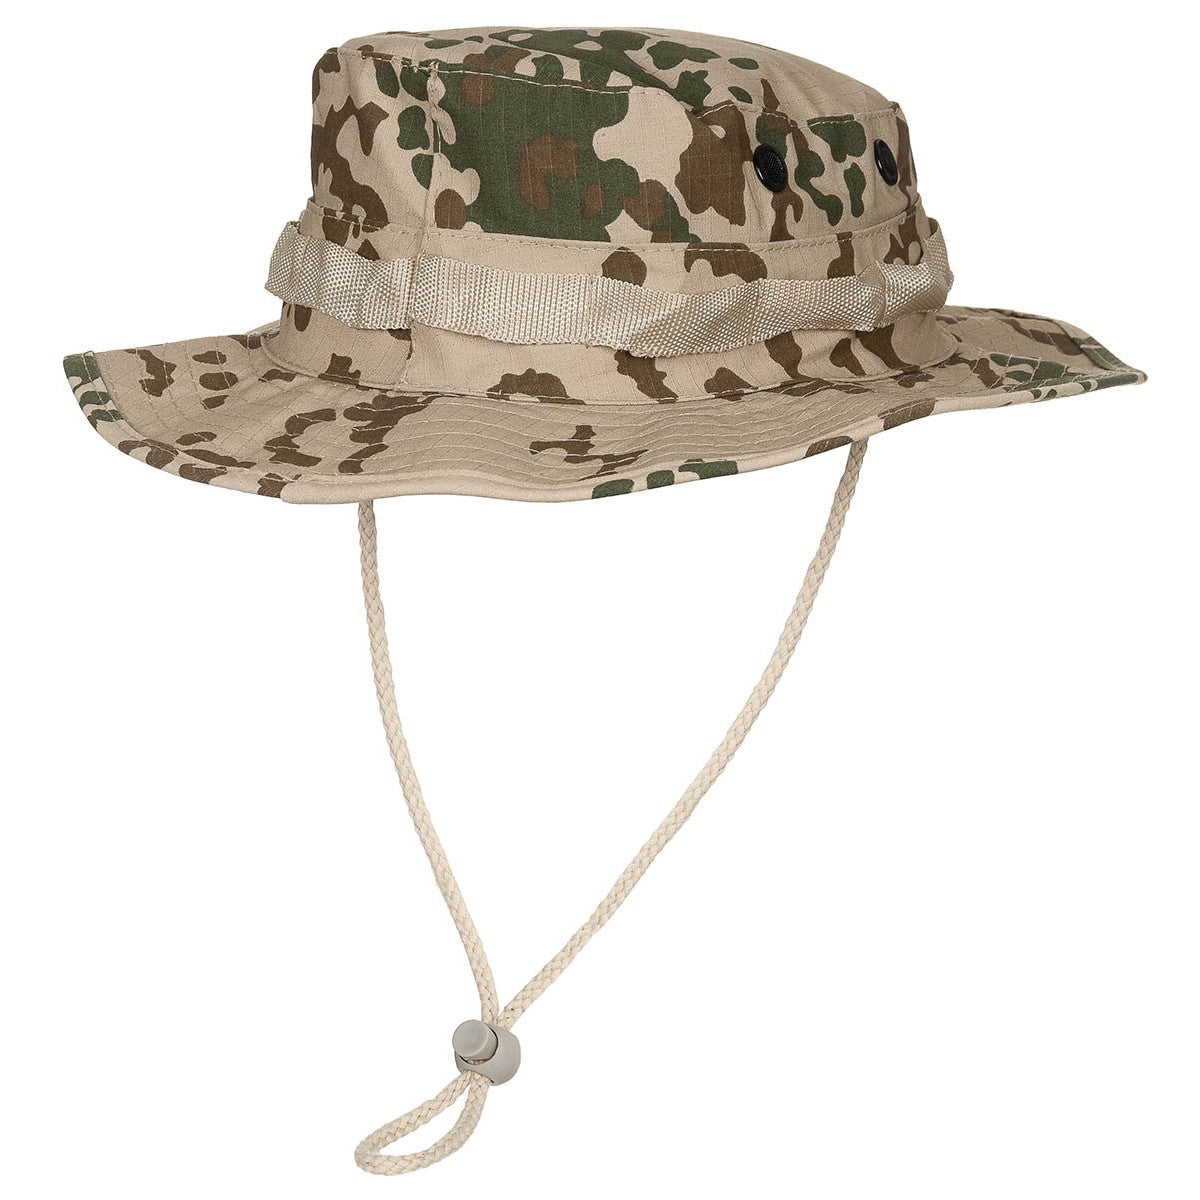 Boonie taktyczne - bush hat, pasek pod brodę kamuflaż tropikalny